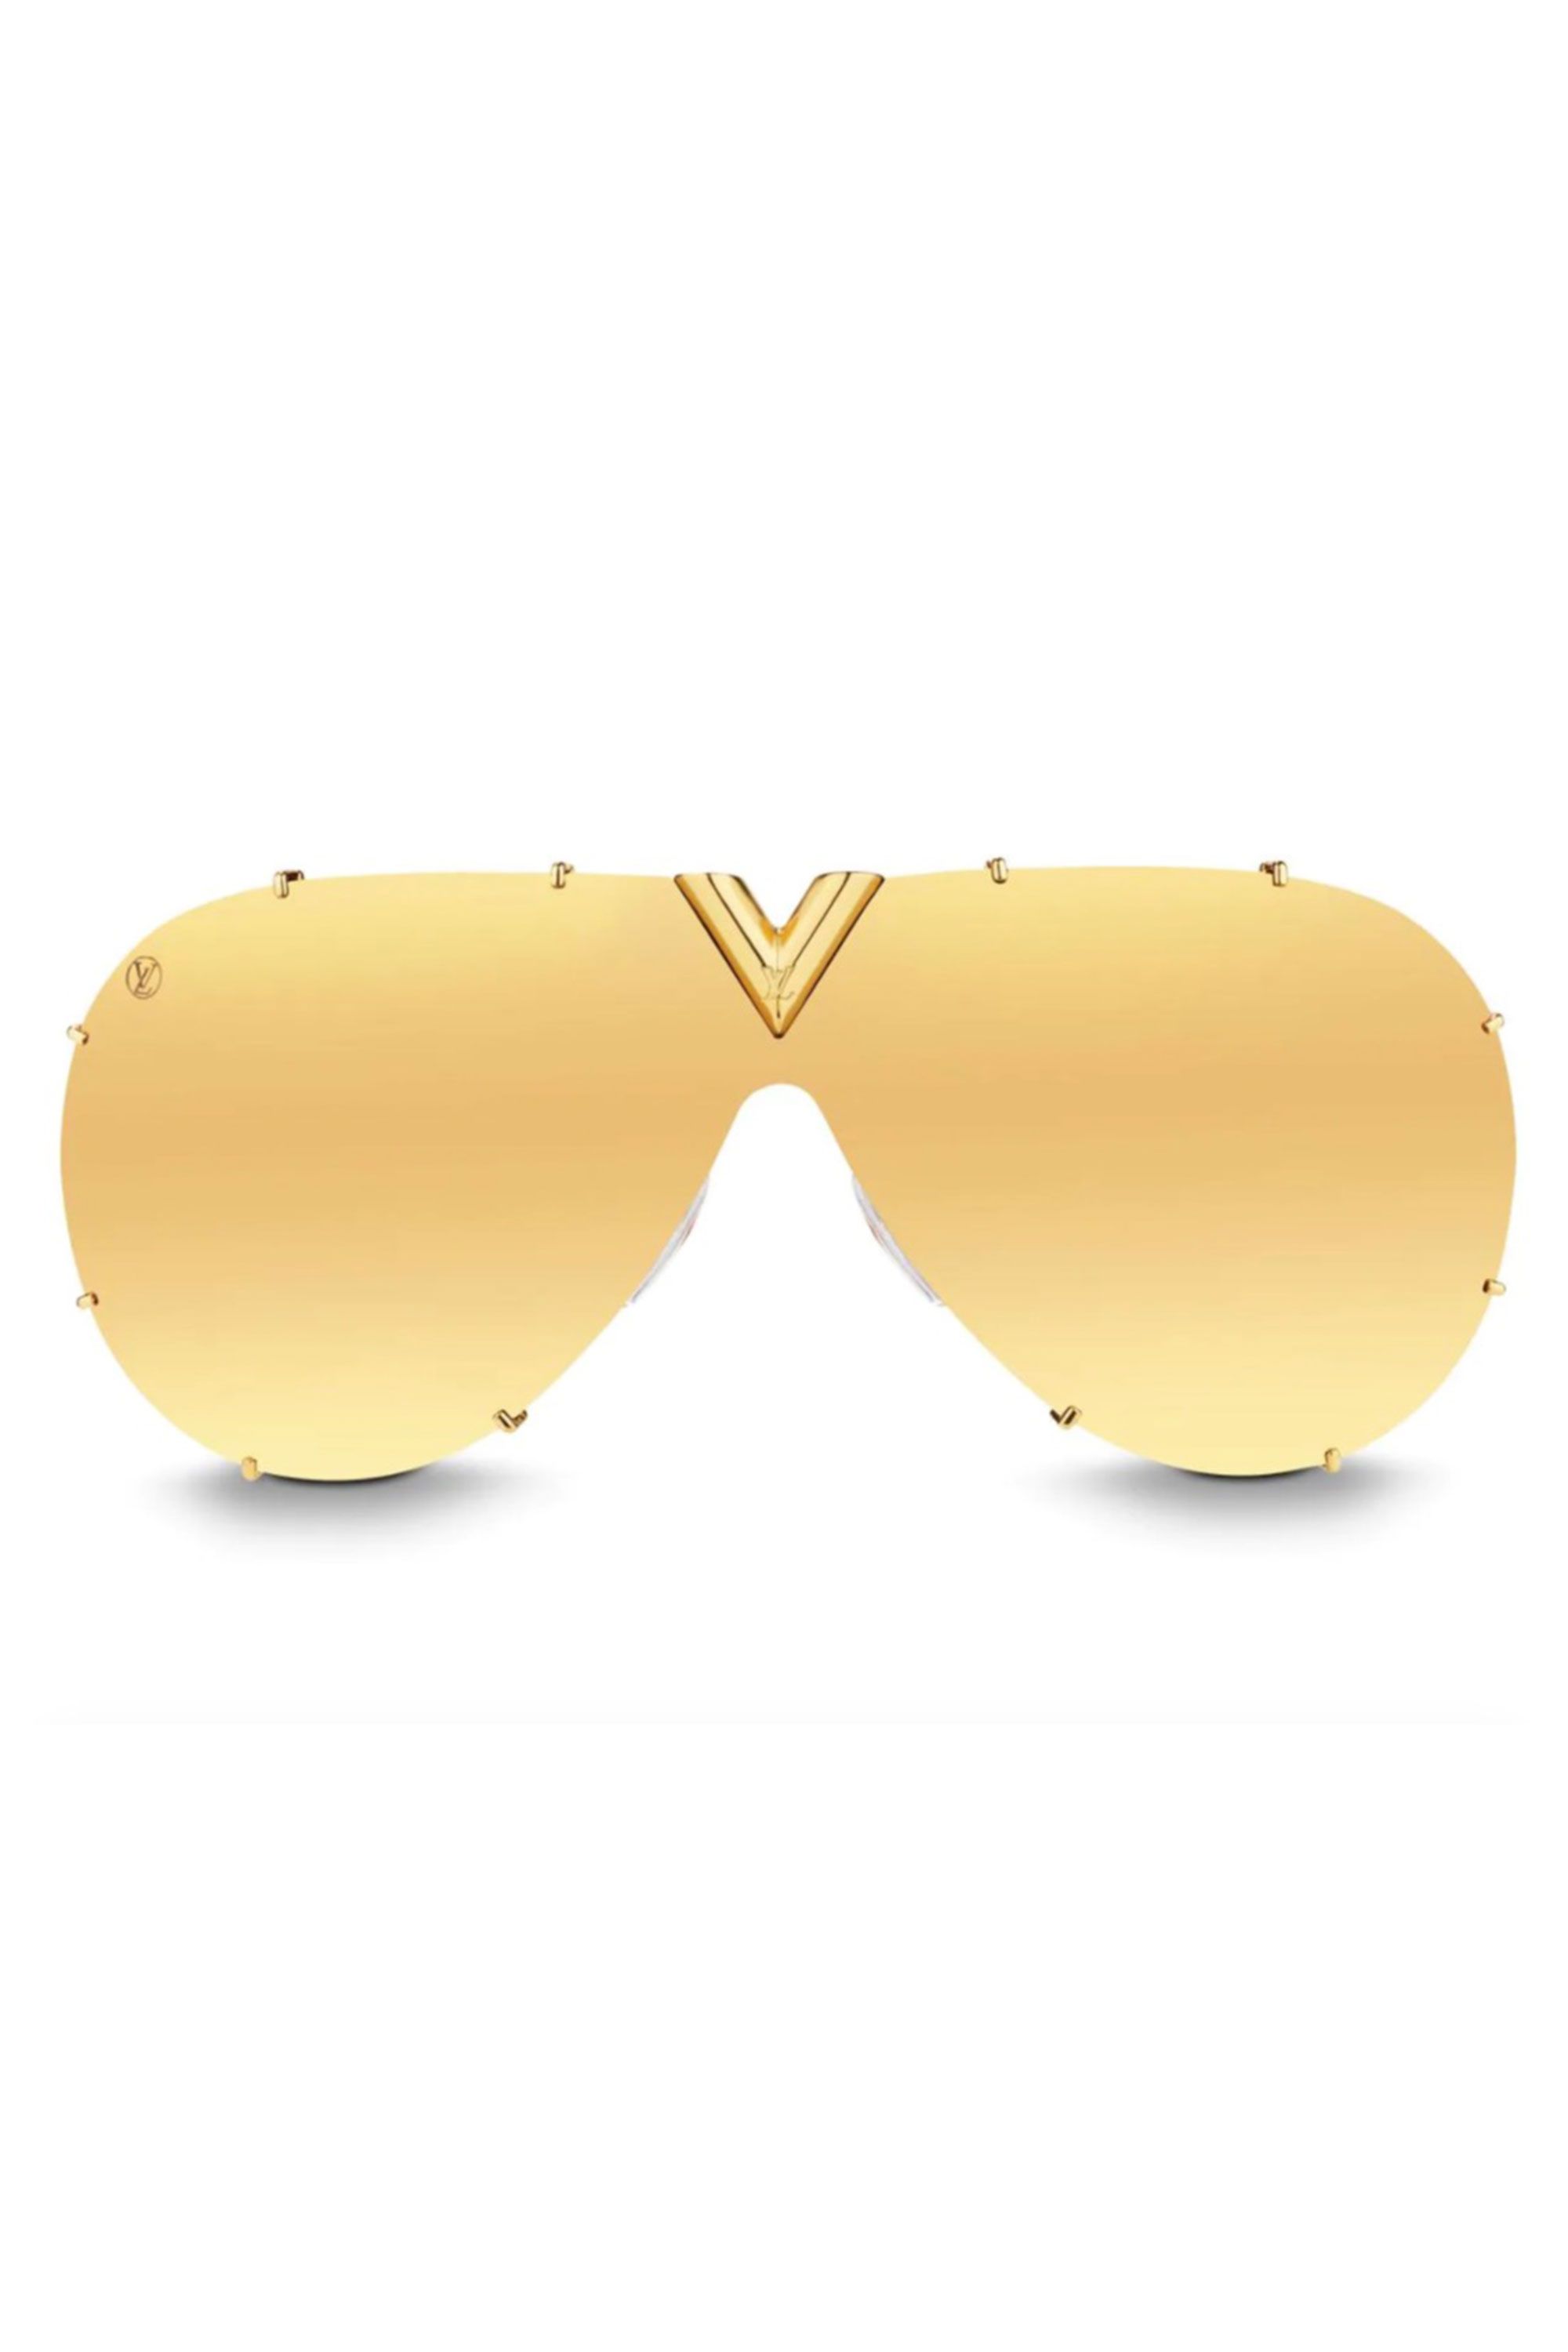 Louis Vuitton 2018 LV Drive Sunglasses - Gold Sunglasses